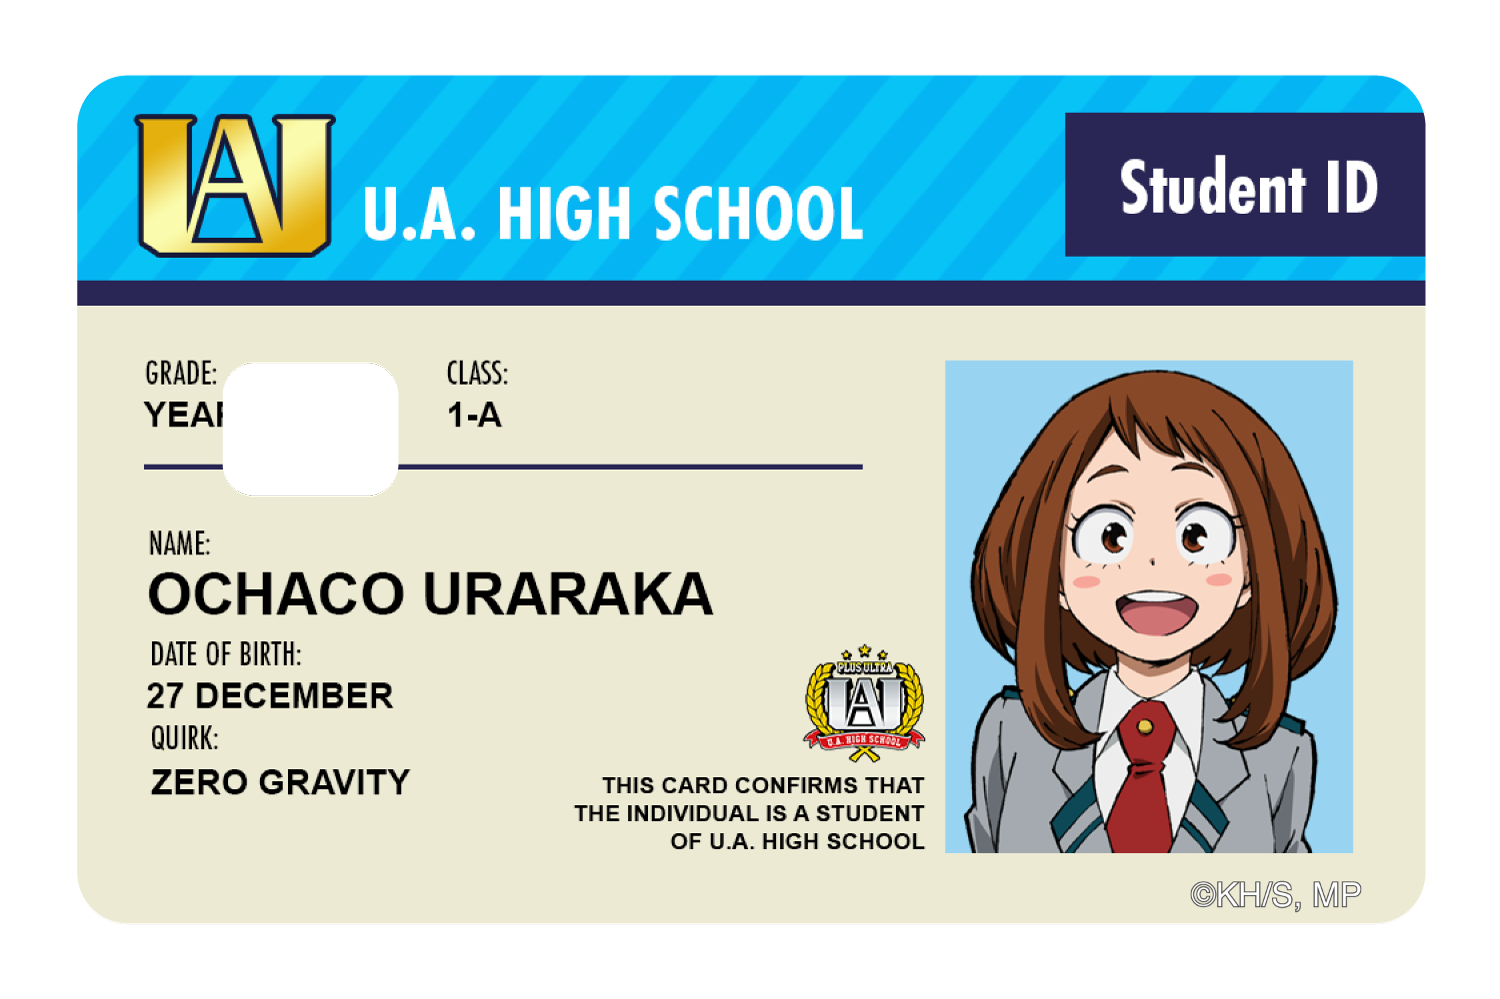 Student ID - Ochaco Uraraka